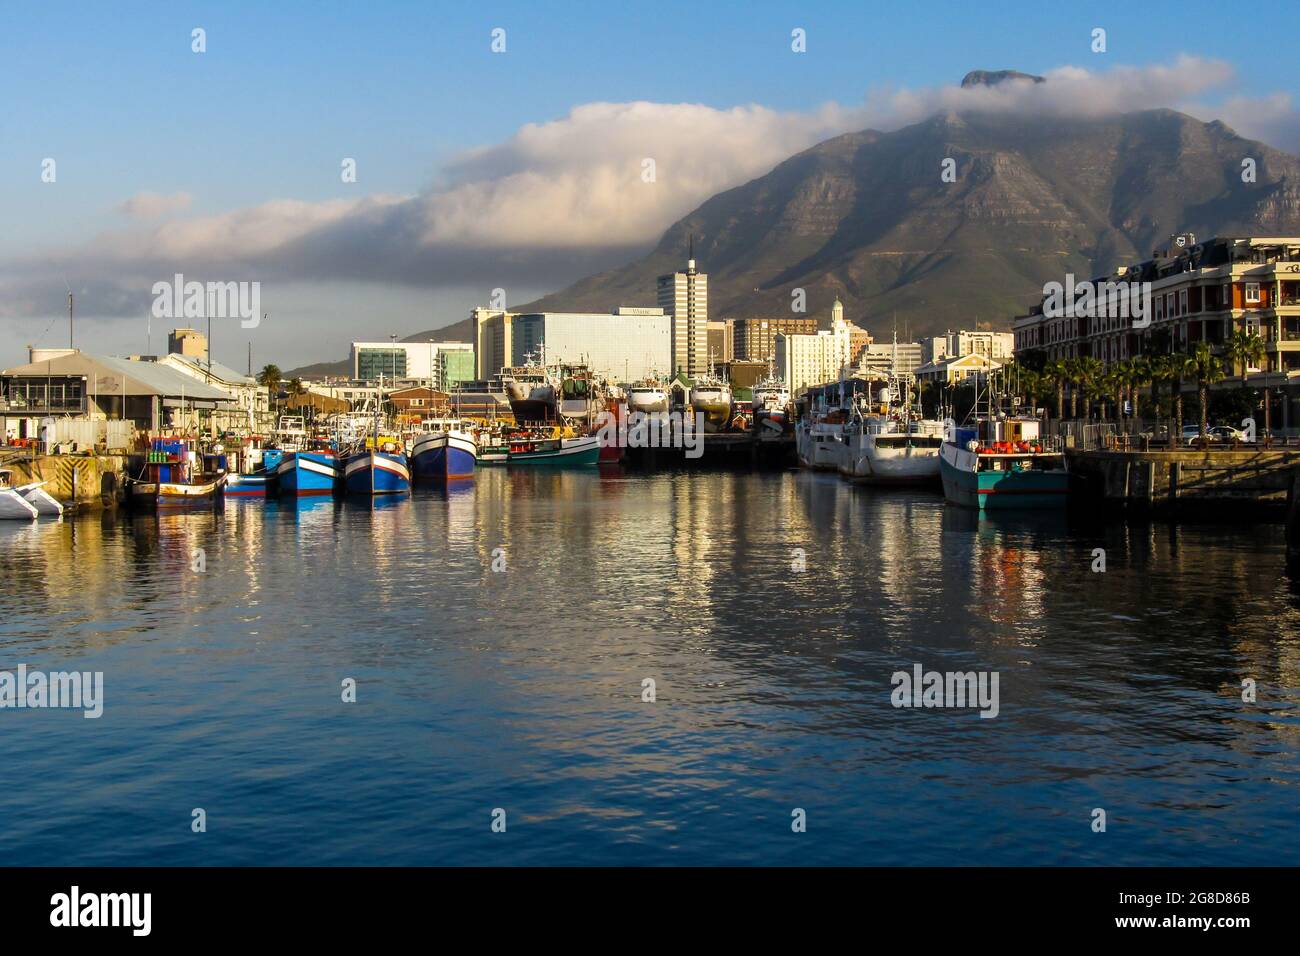 Vue sur la baie dans le front de mer de V&A, le Cap, Afrique du Sud, avec Devils Peak en arrière-plan. Banque D'Images